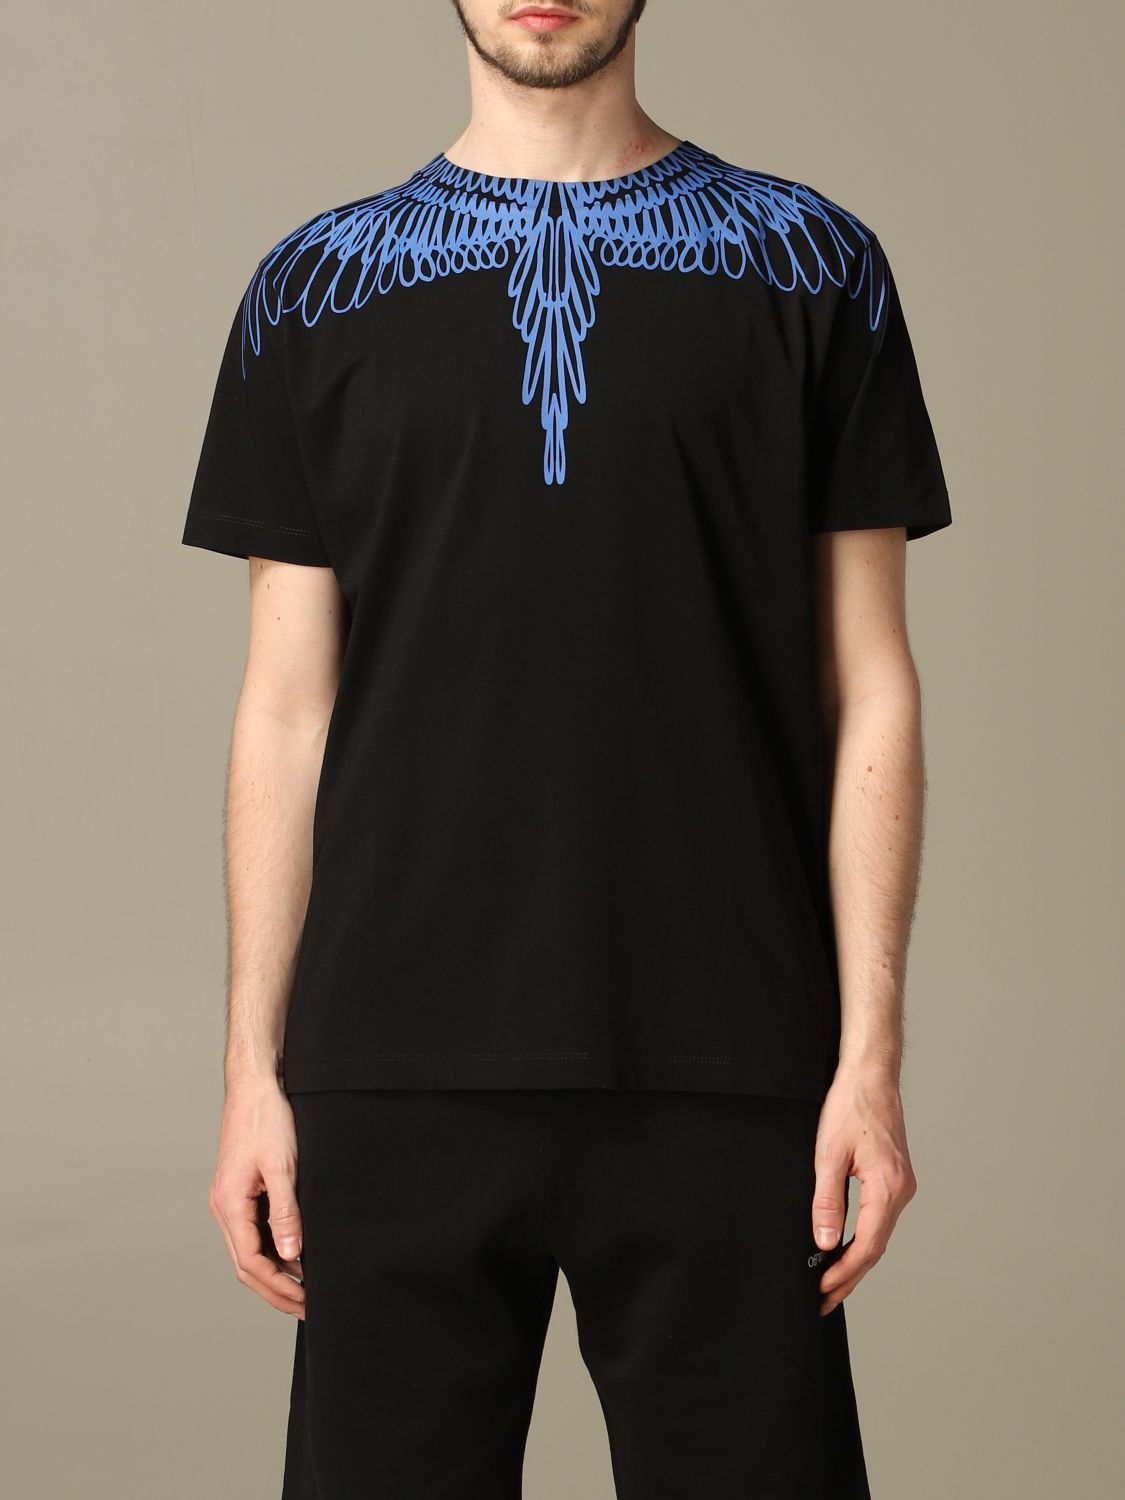 MARCELO BURLON: T-shirt with wings print | T-Shirt Marcelo Burlon 